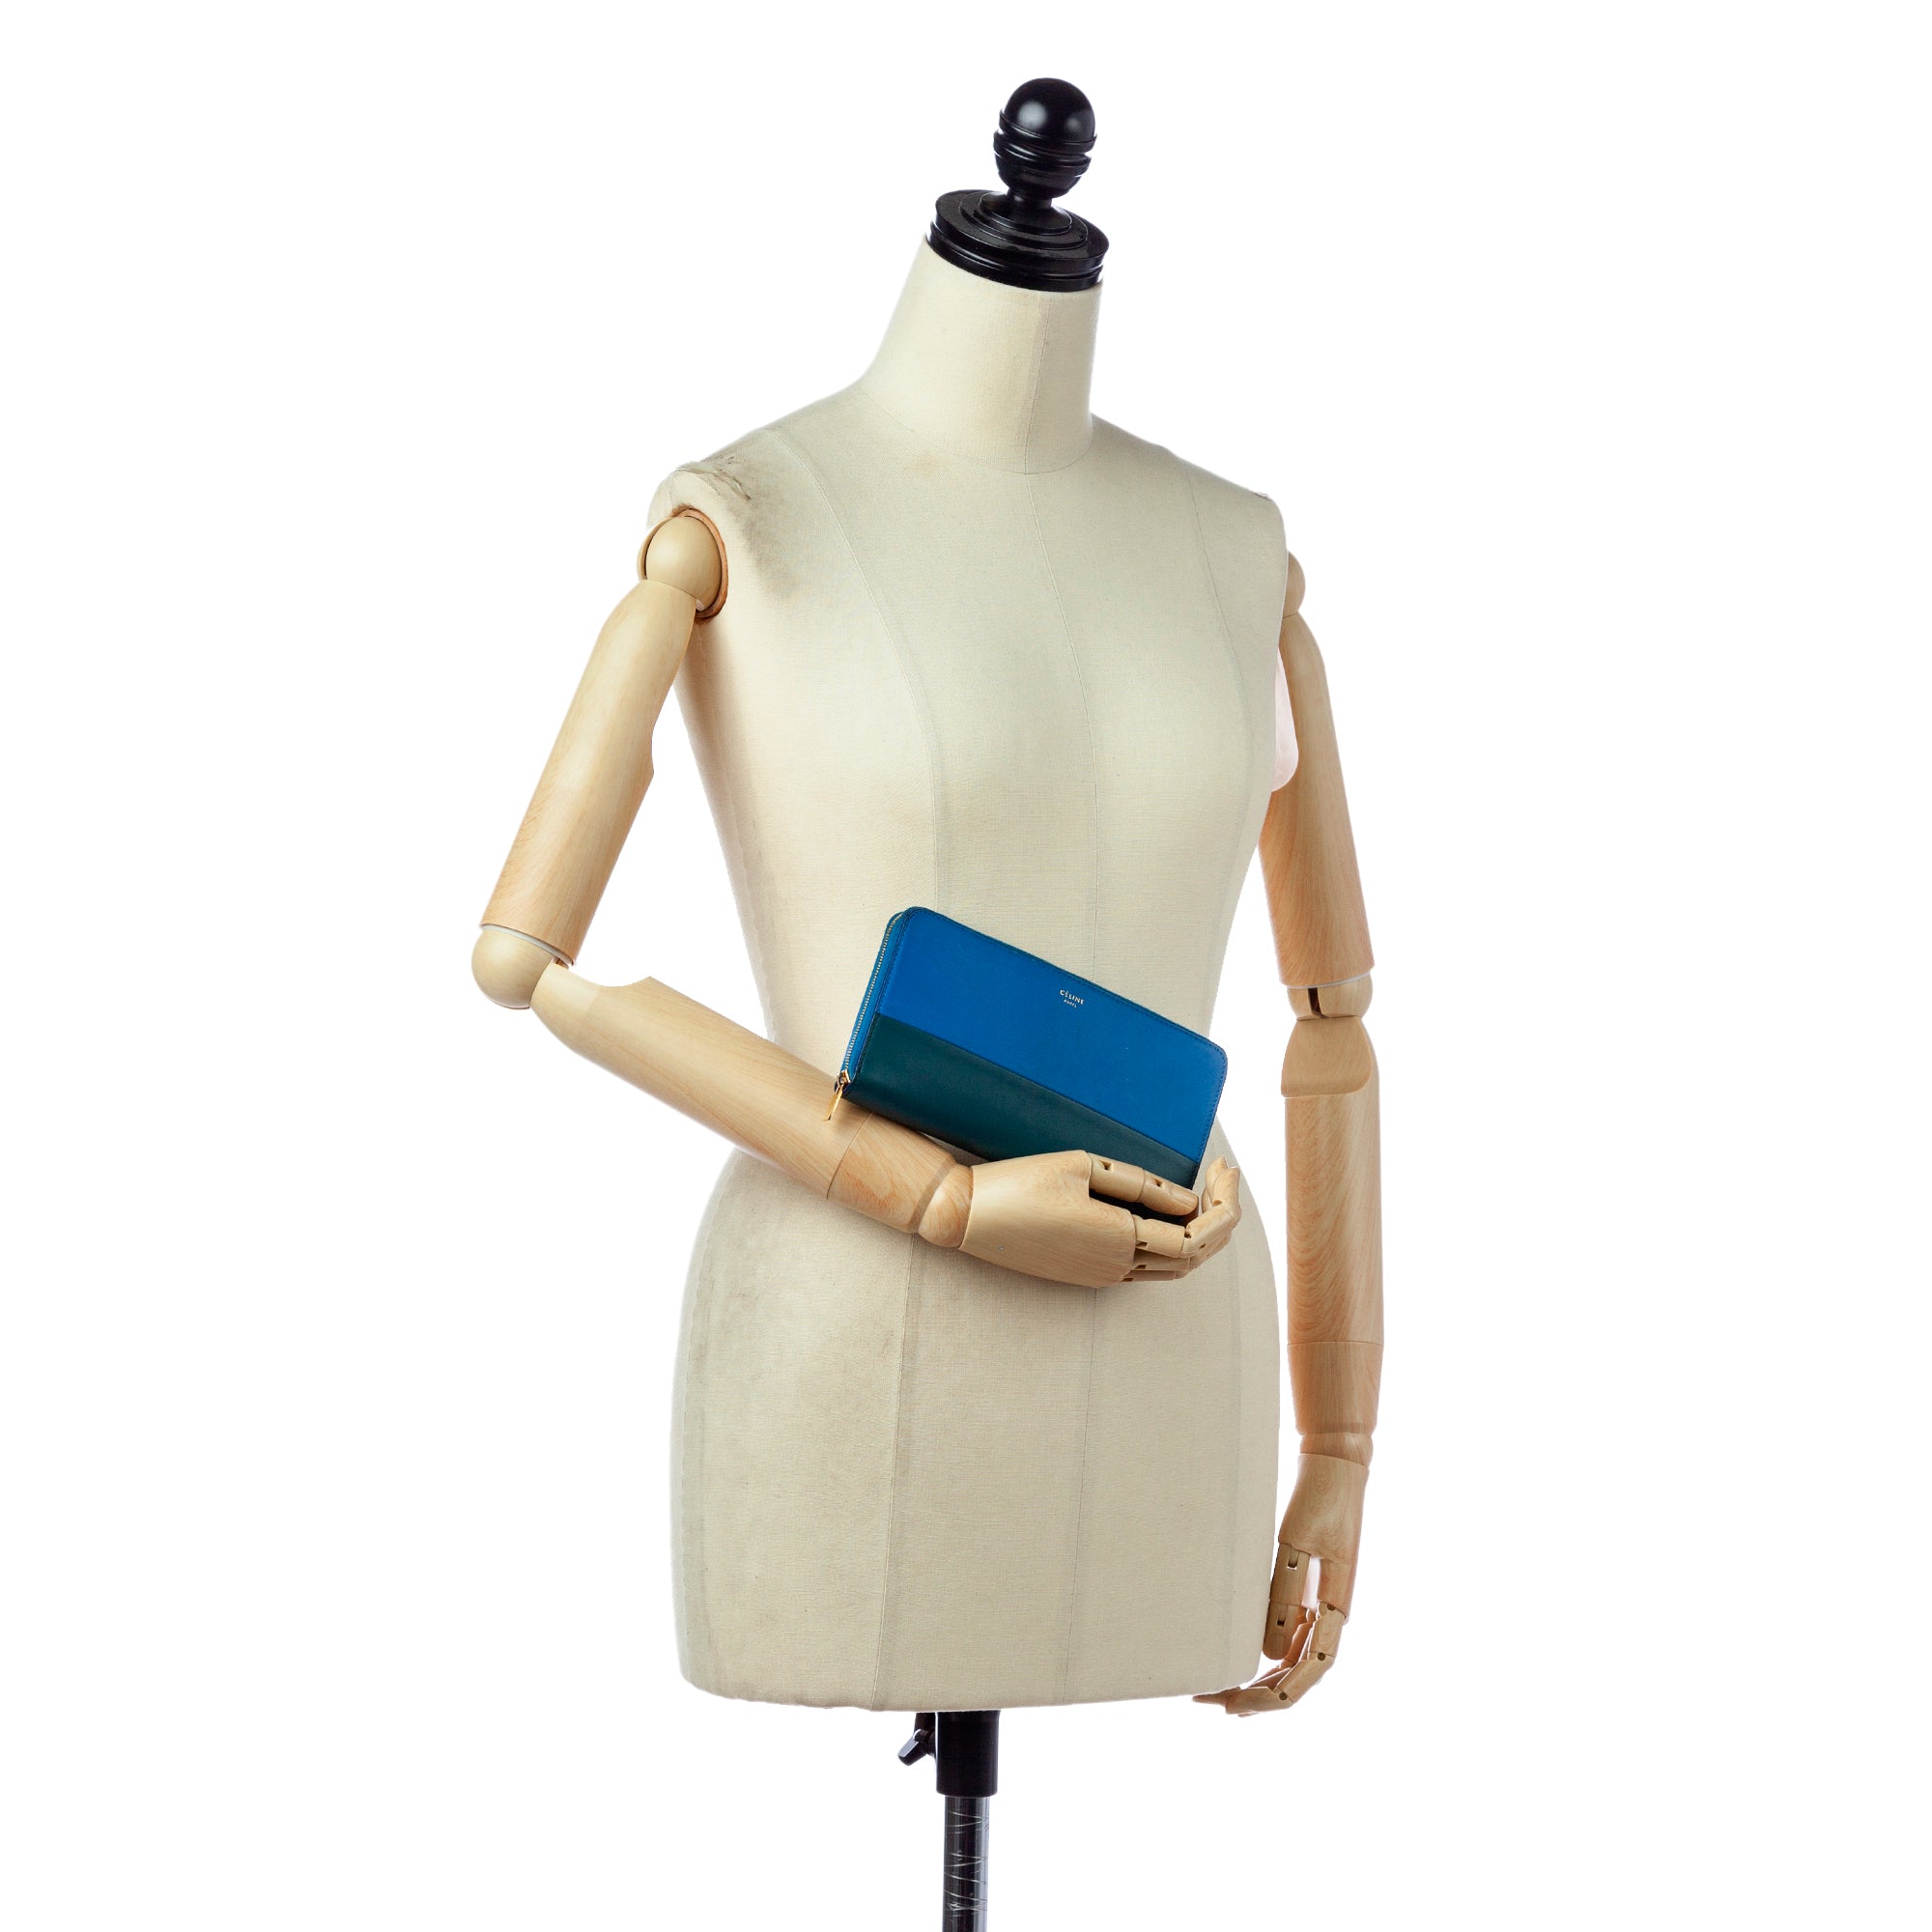 Celine Navy Blue/Orange Leather Large Multifunction Strap Wallet Celine